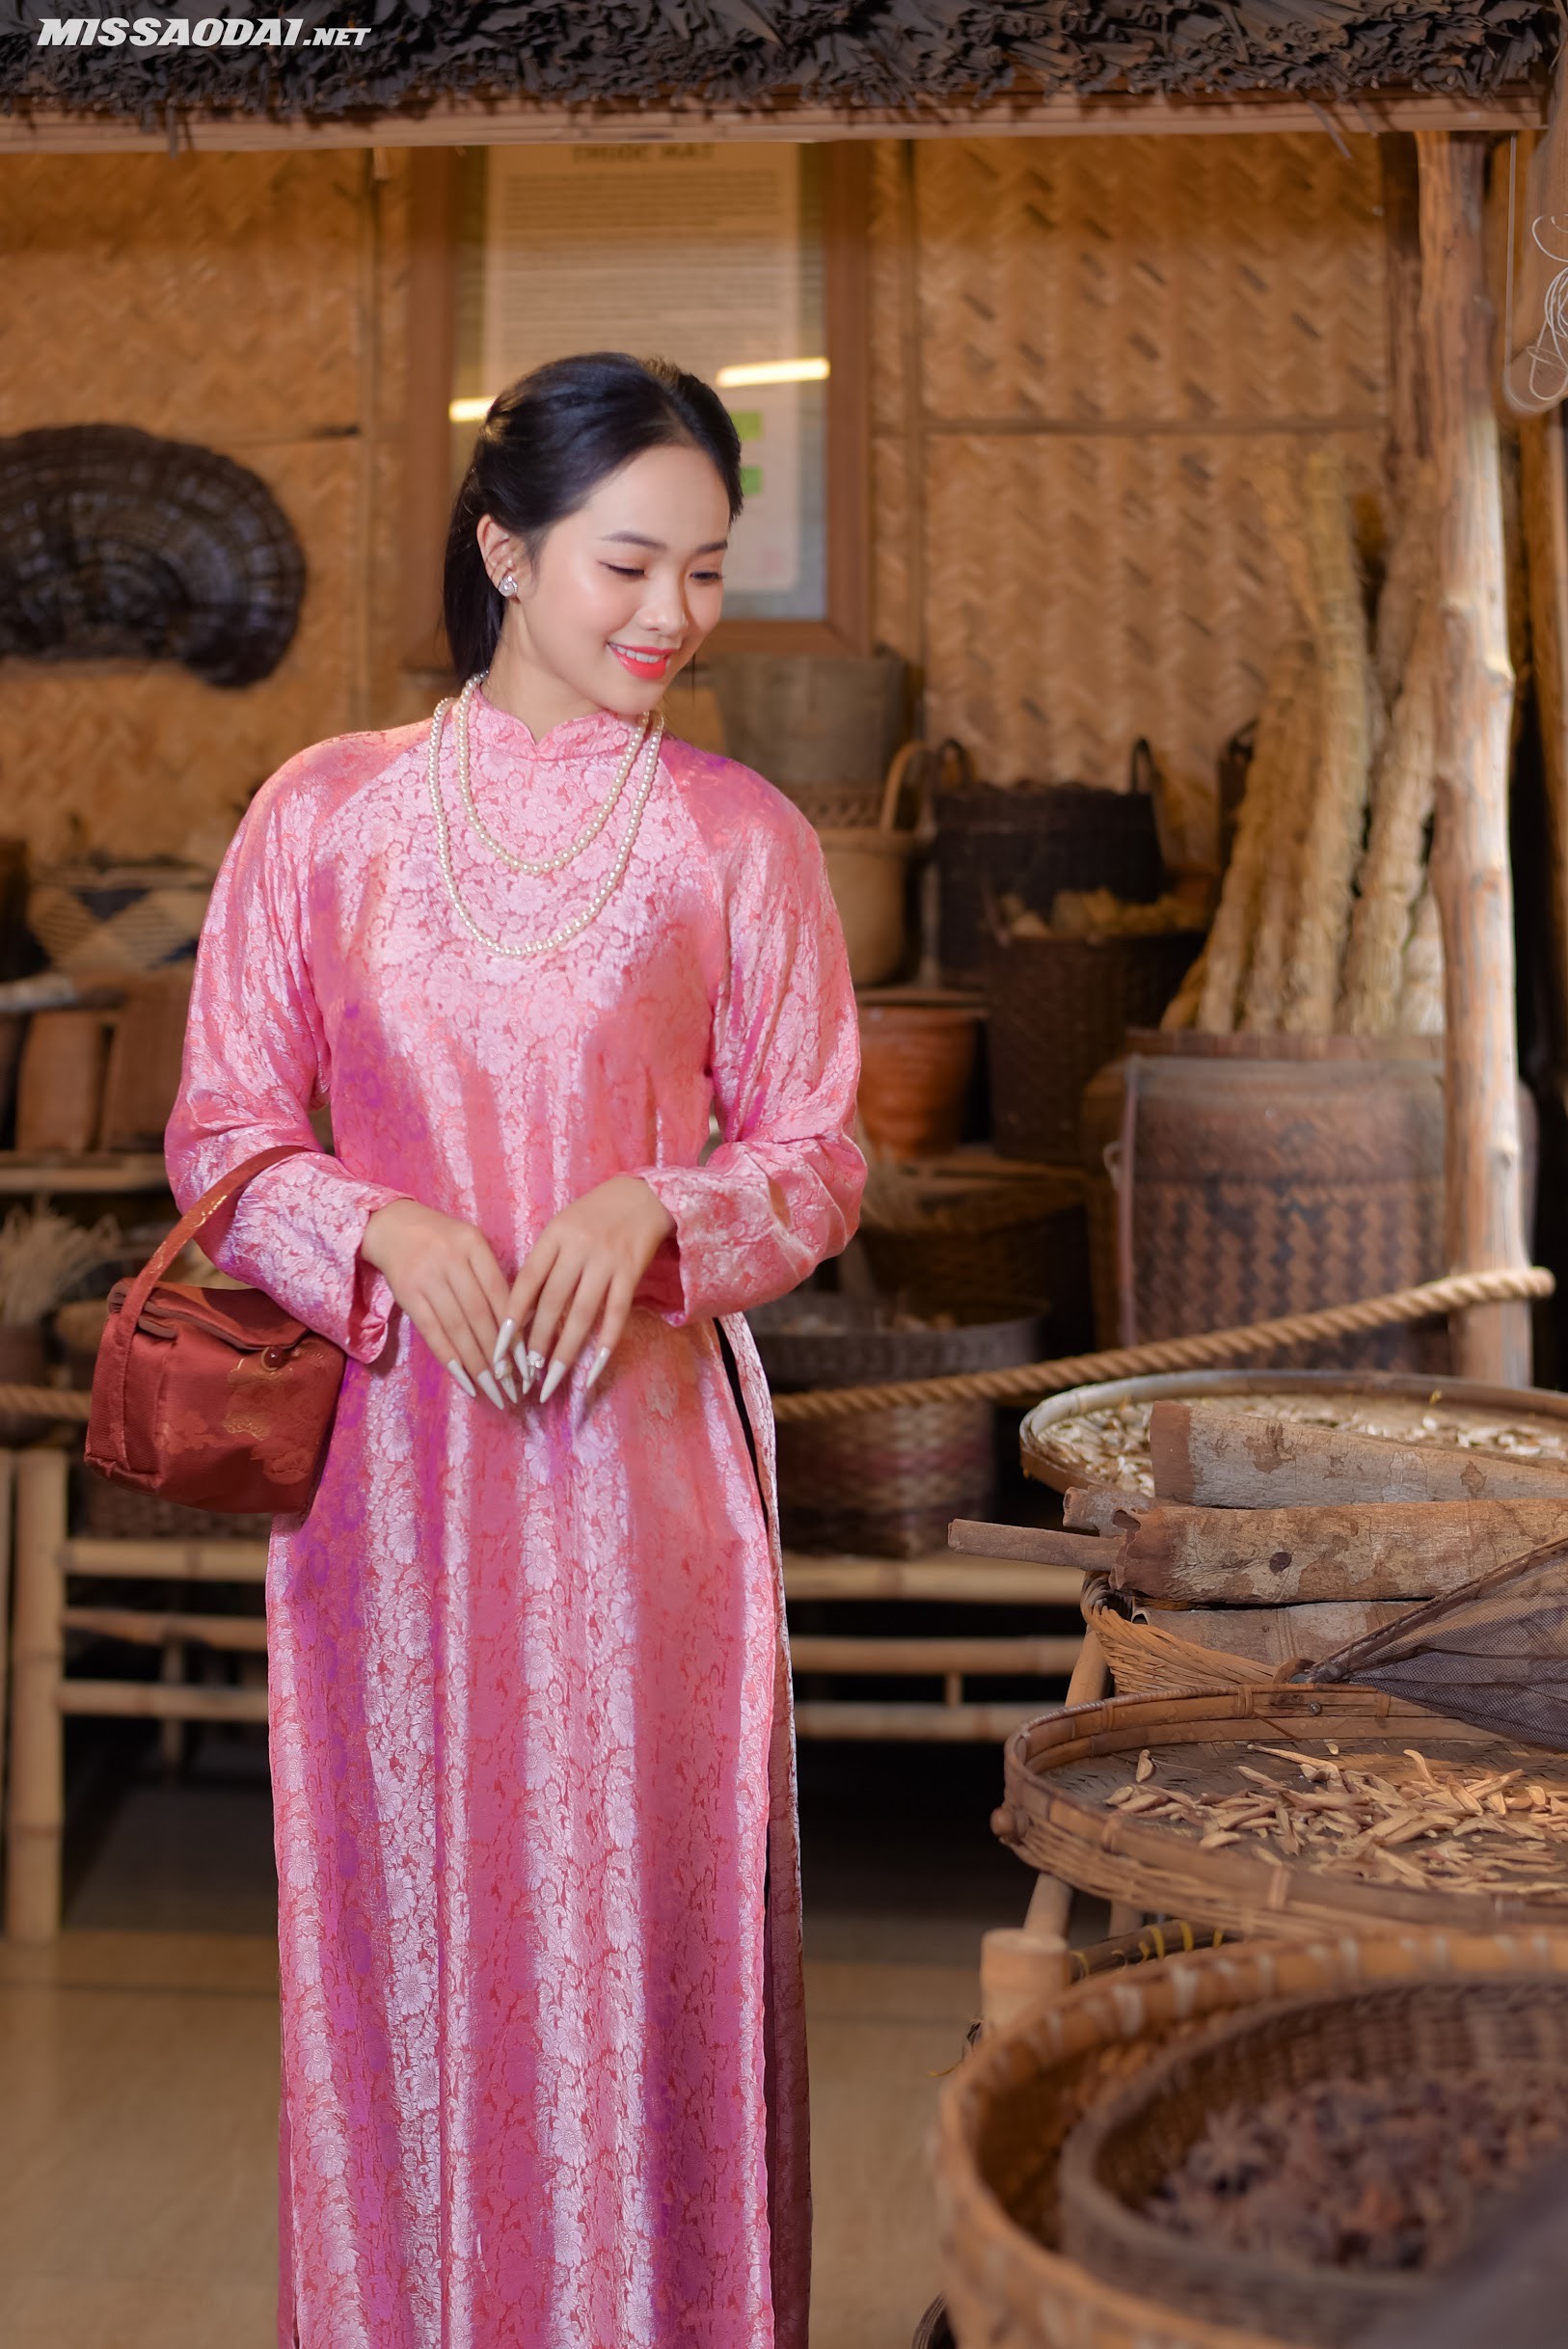 Hình ảnh một cô gái mặc áo dài truyền thống chụp ảnh bên những bình thuốc cổ xưa